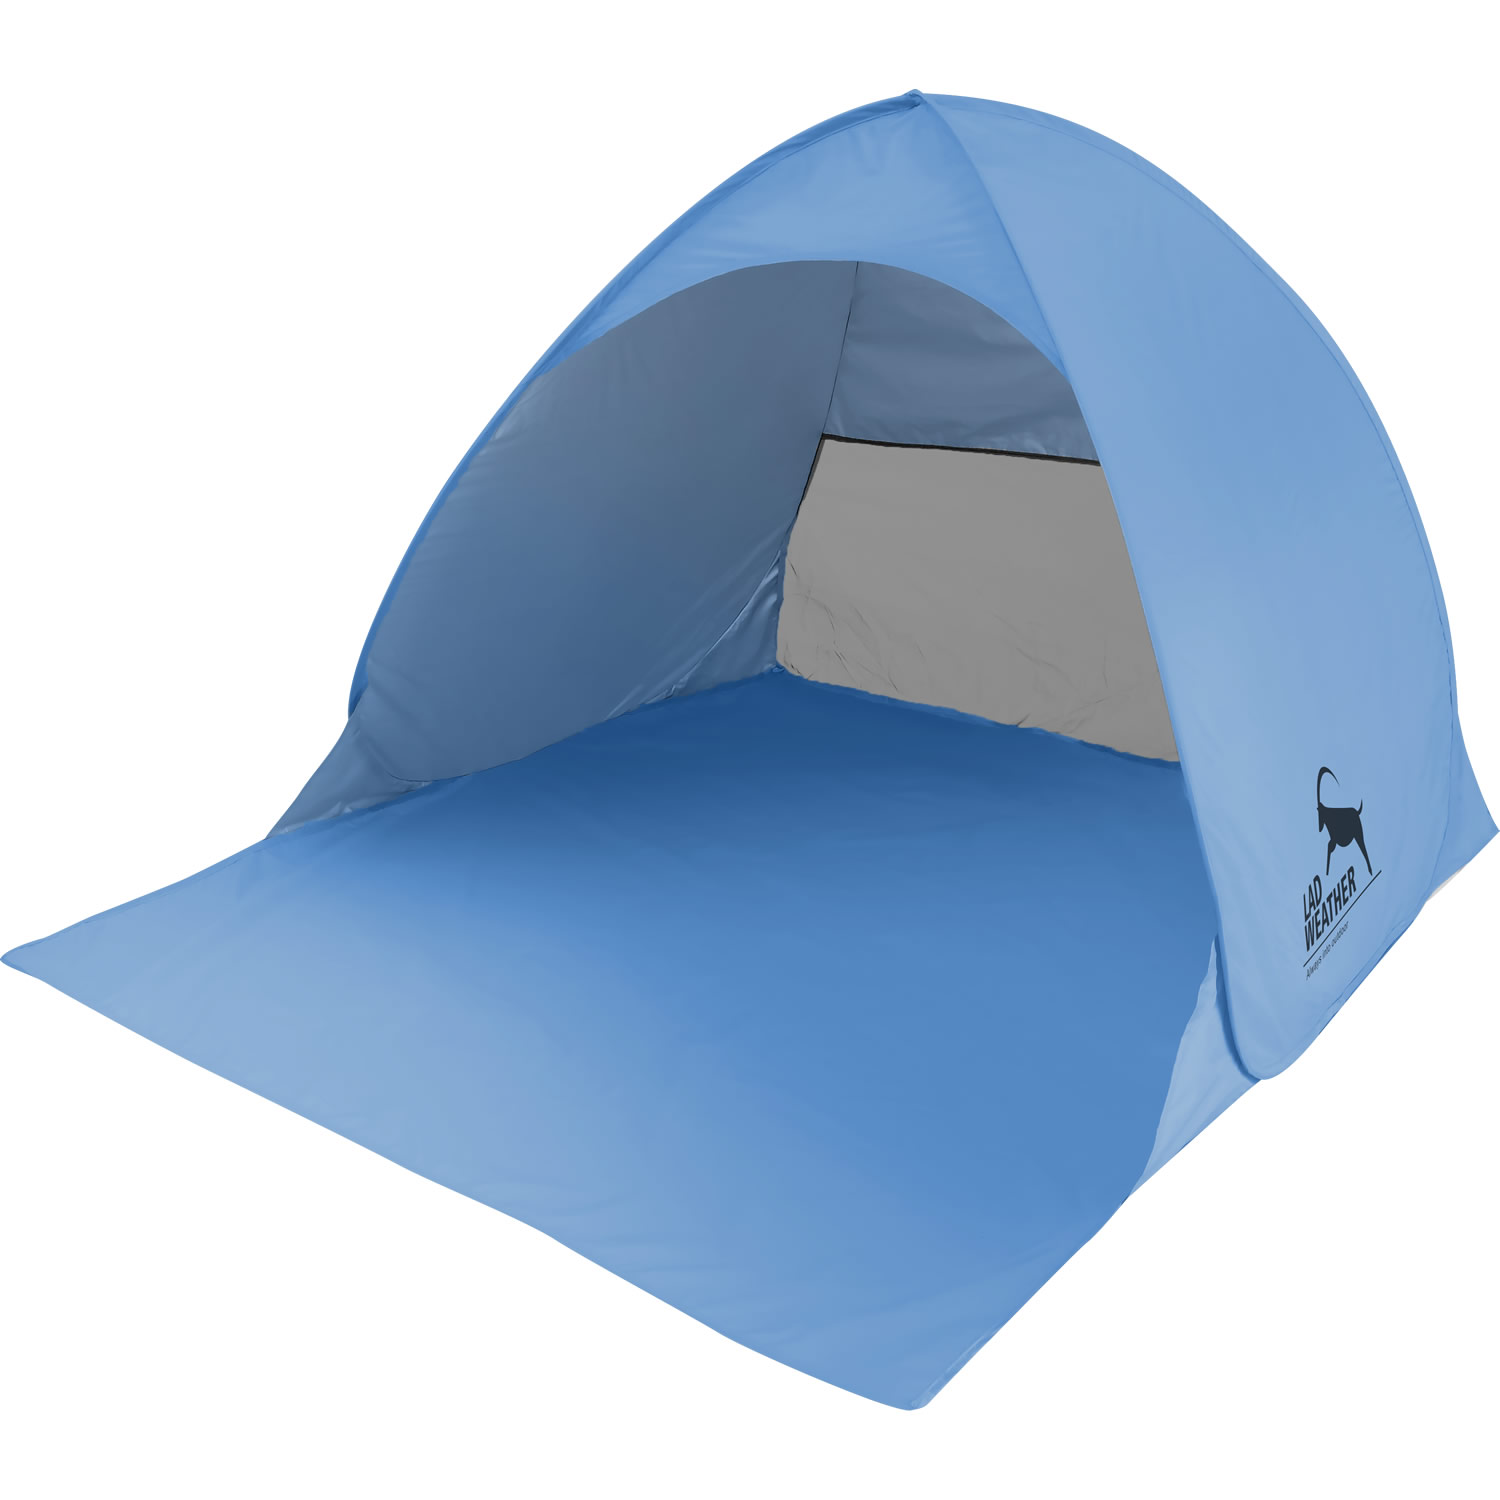 テント ワンタッチ ポップアップテント ワンタッチテント 一人用 二人用 防水 簡易テント 1人用 2人用 ビーチテント キャンプ ピクニック 公園  海 山 川